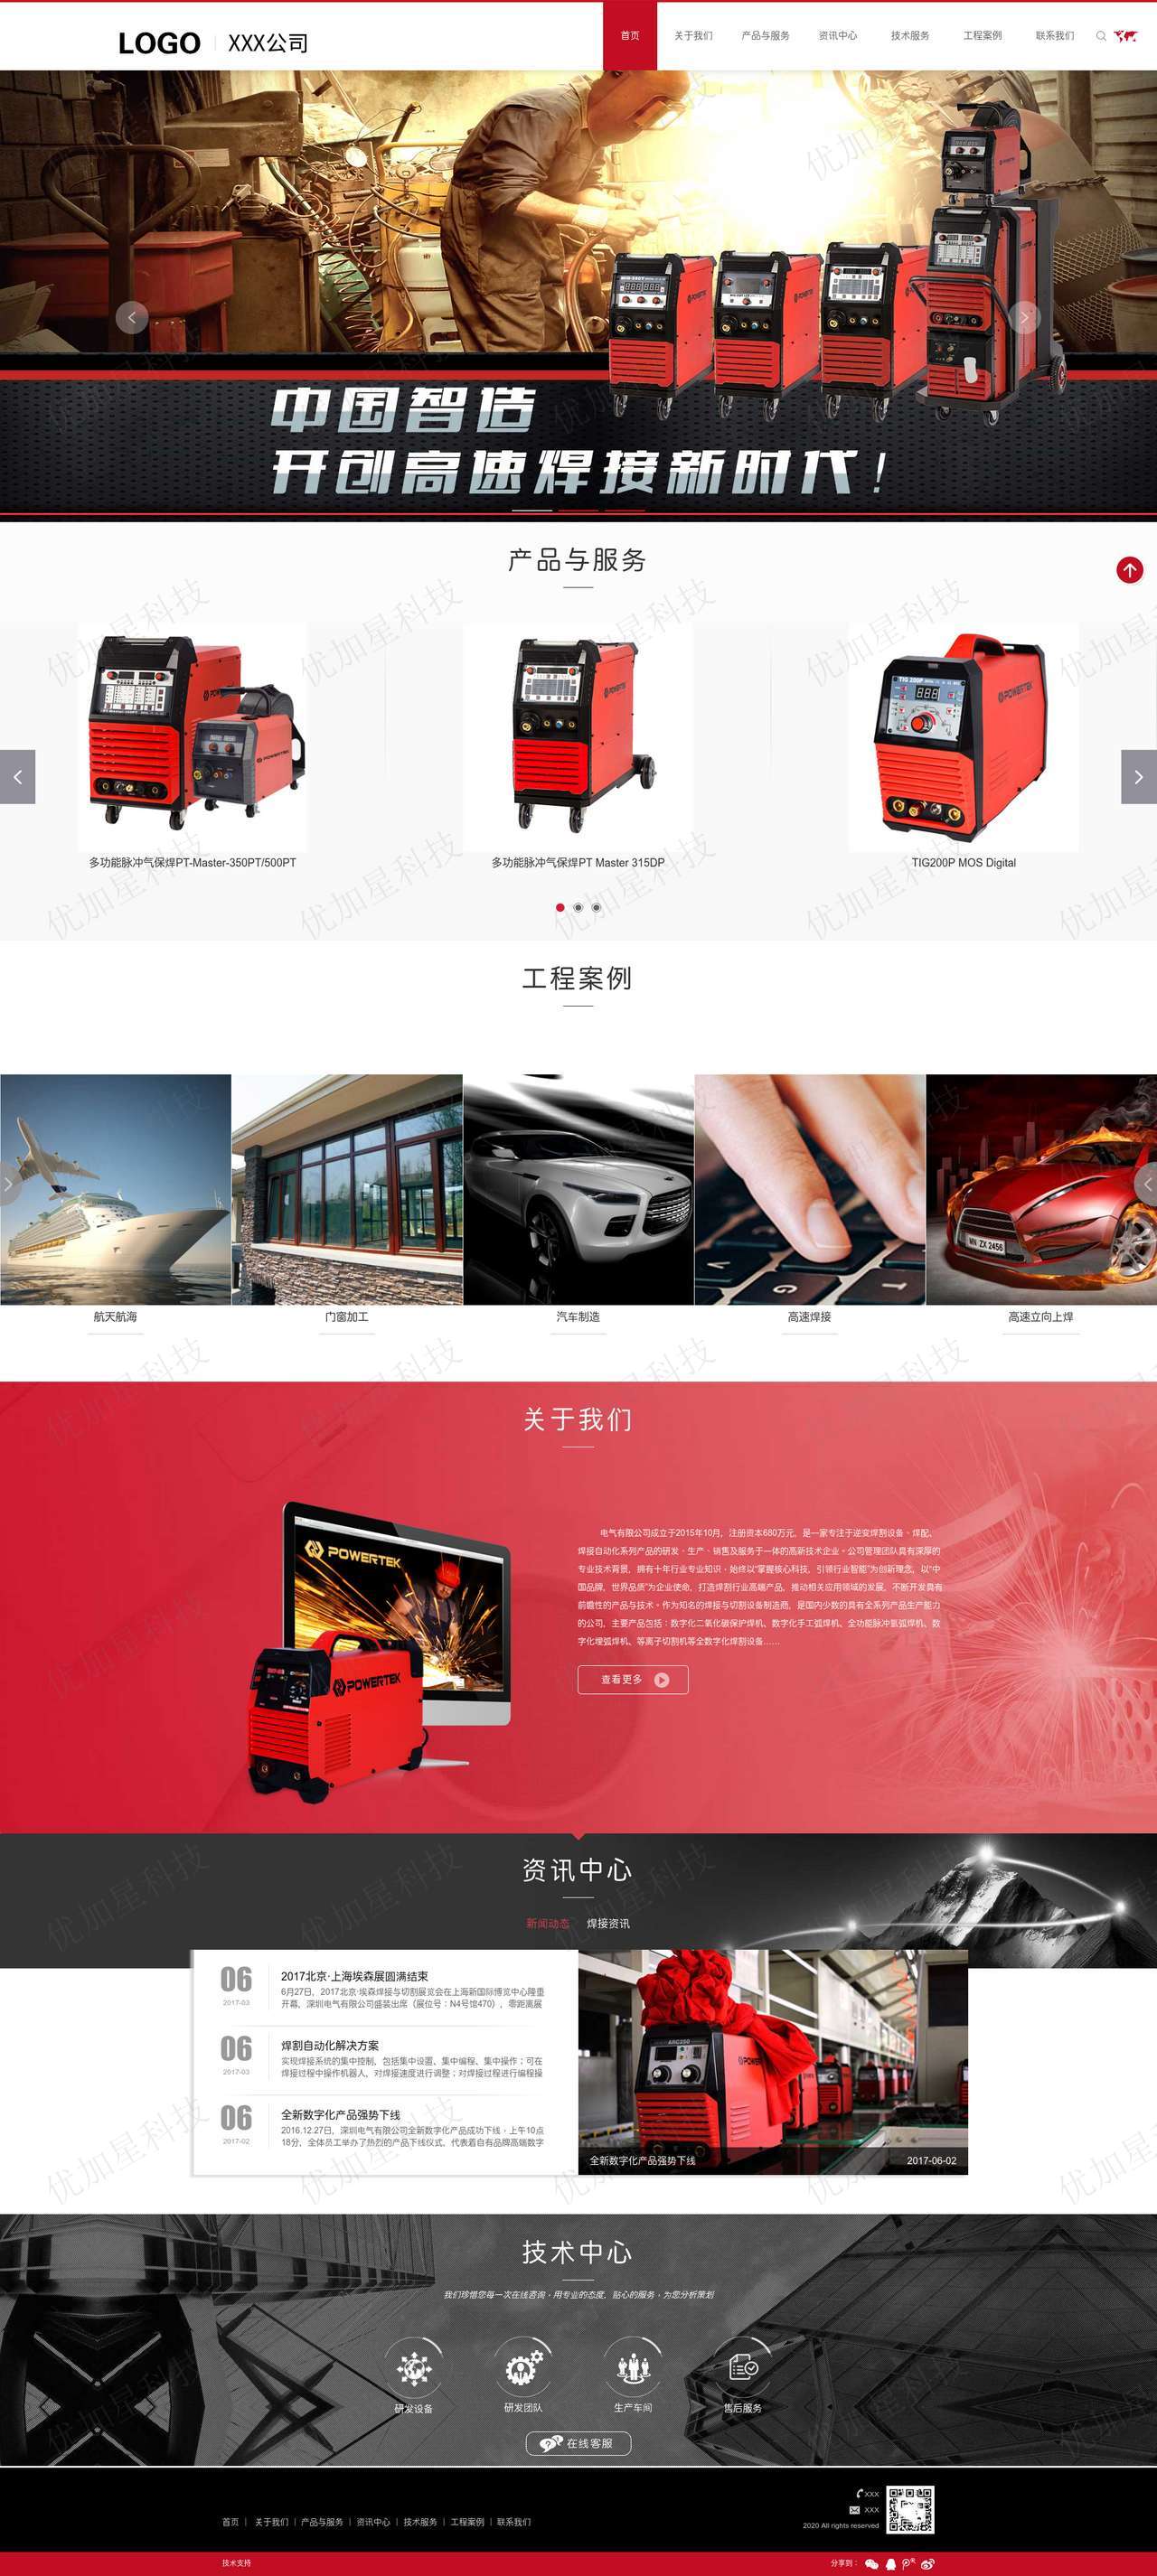 红色大气电气焊接机械设备企业网站模板_优加星网络科技